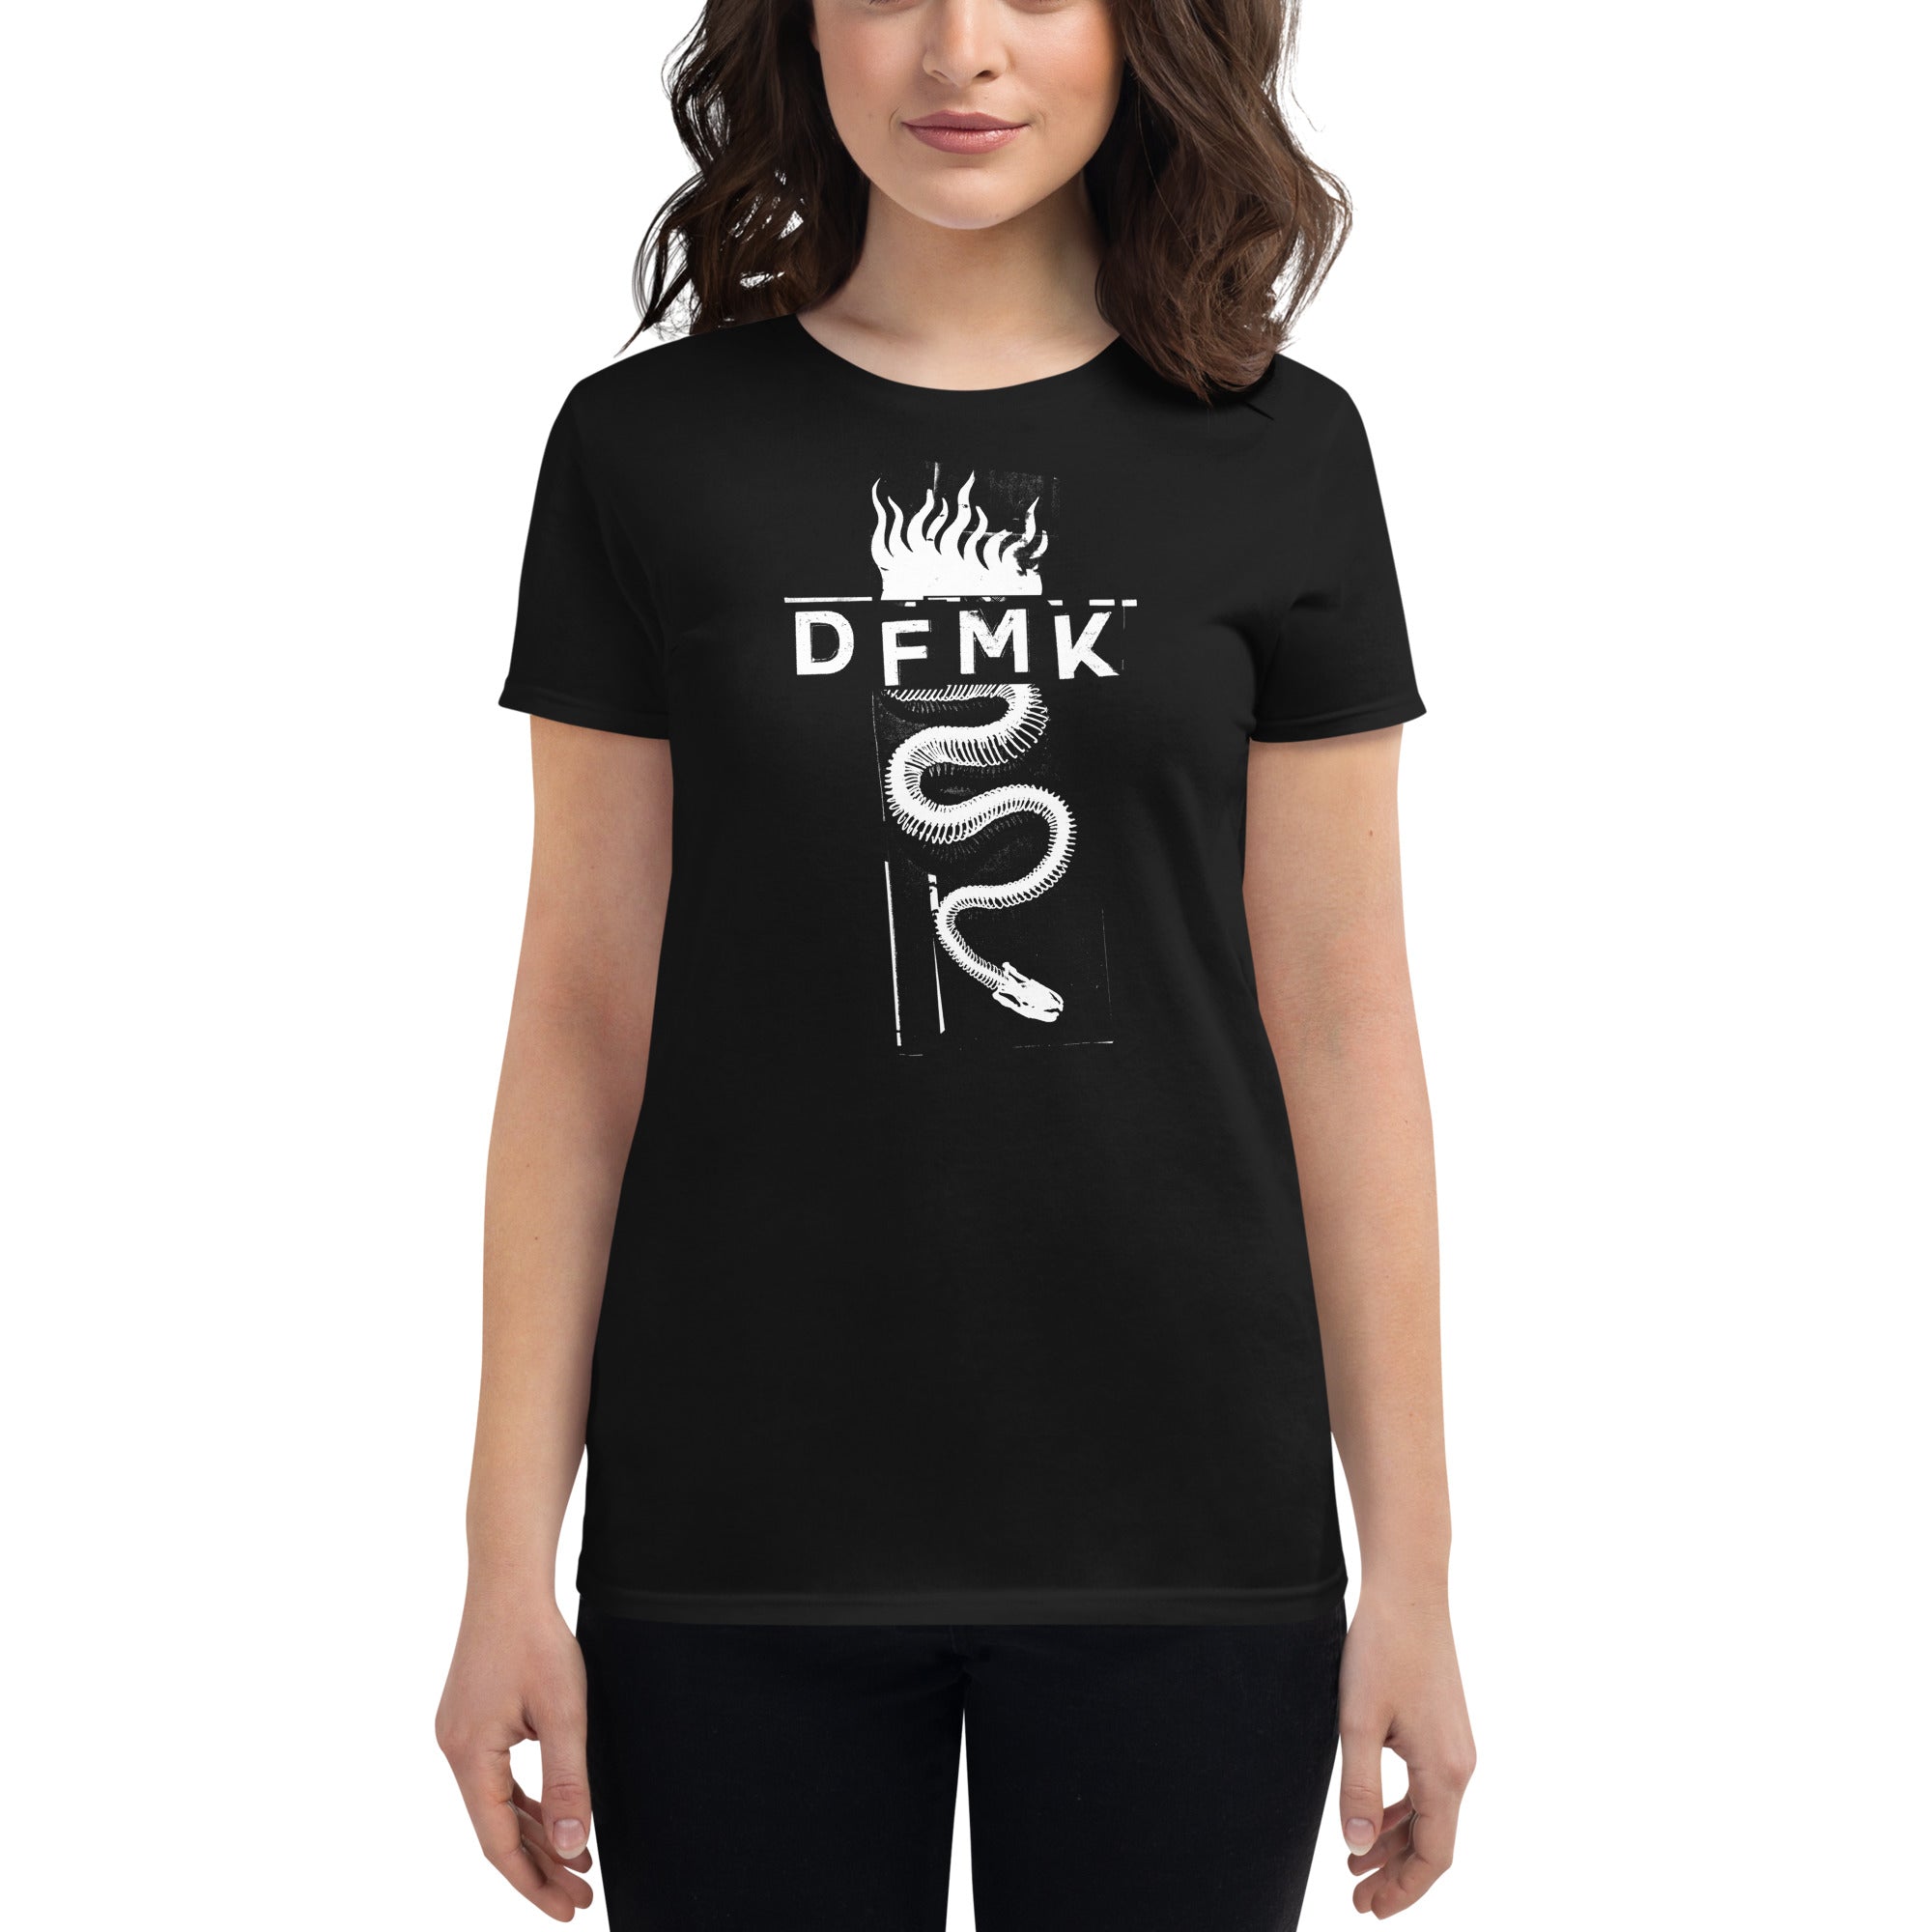 DFMK "Dame Peligro" Fitted Black T-shirt